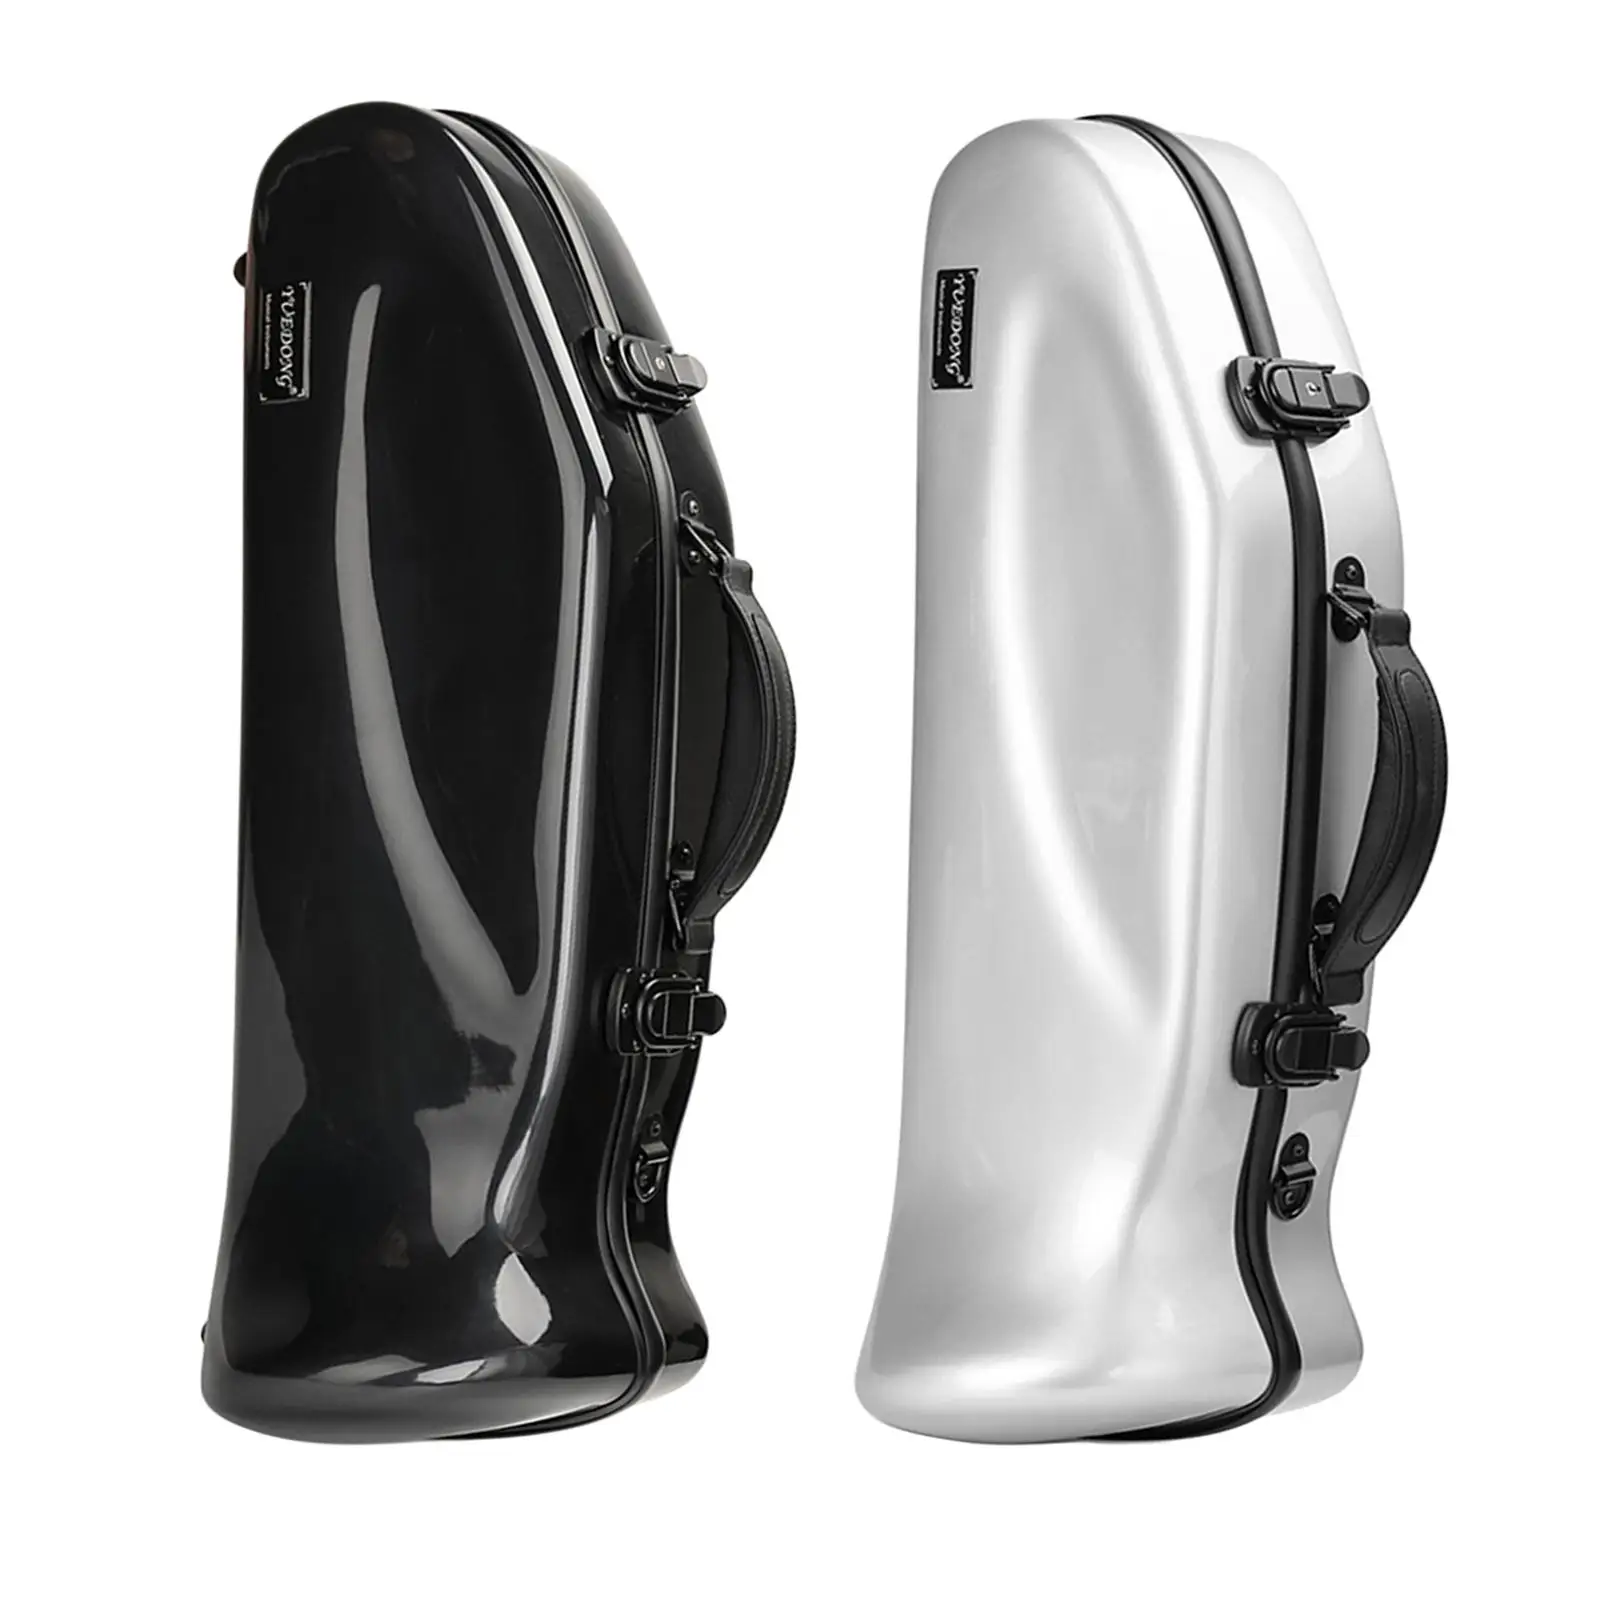 Trumpet Case Adjustable Detachable Backpack Frp with Shoulder Strap Instrument Case